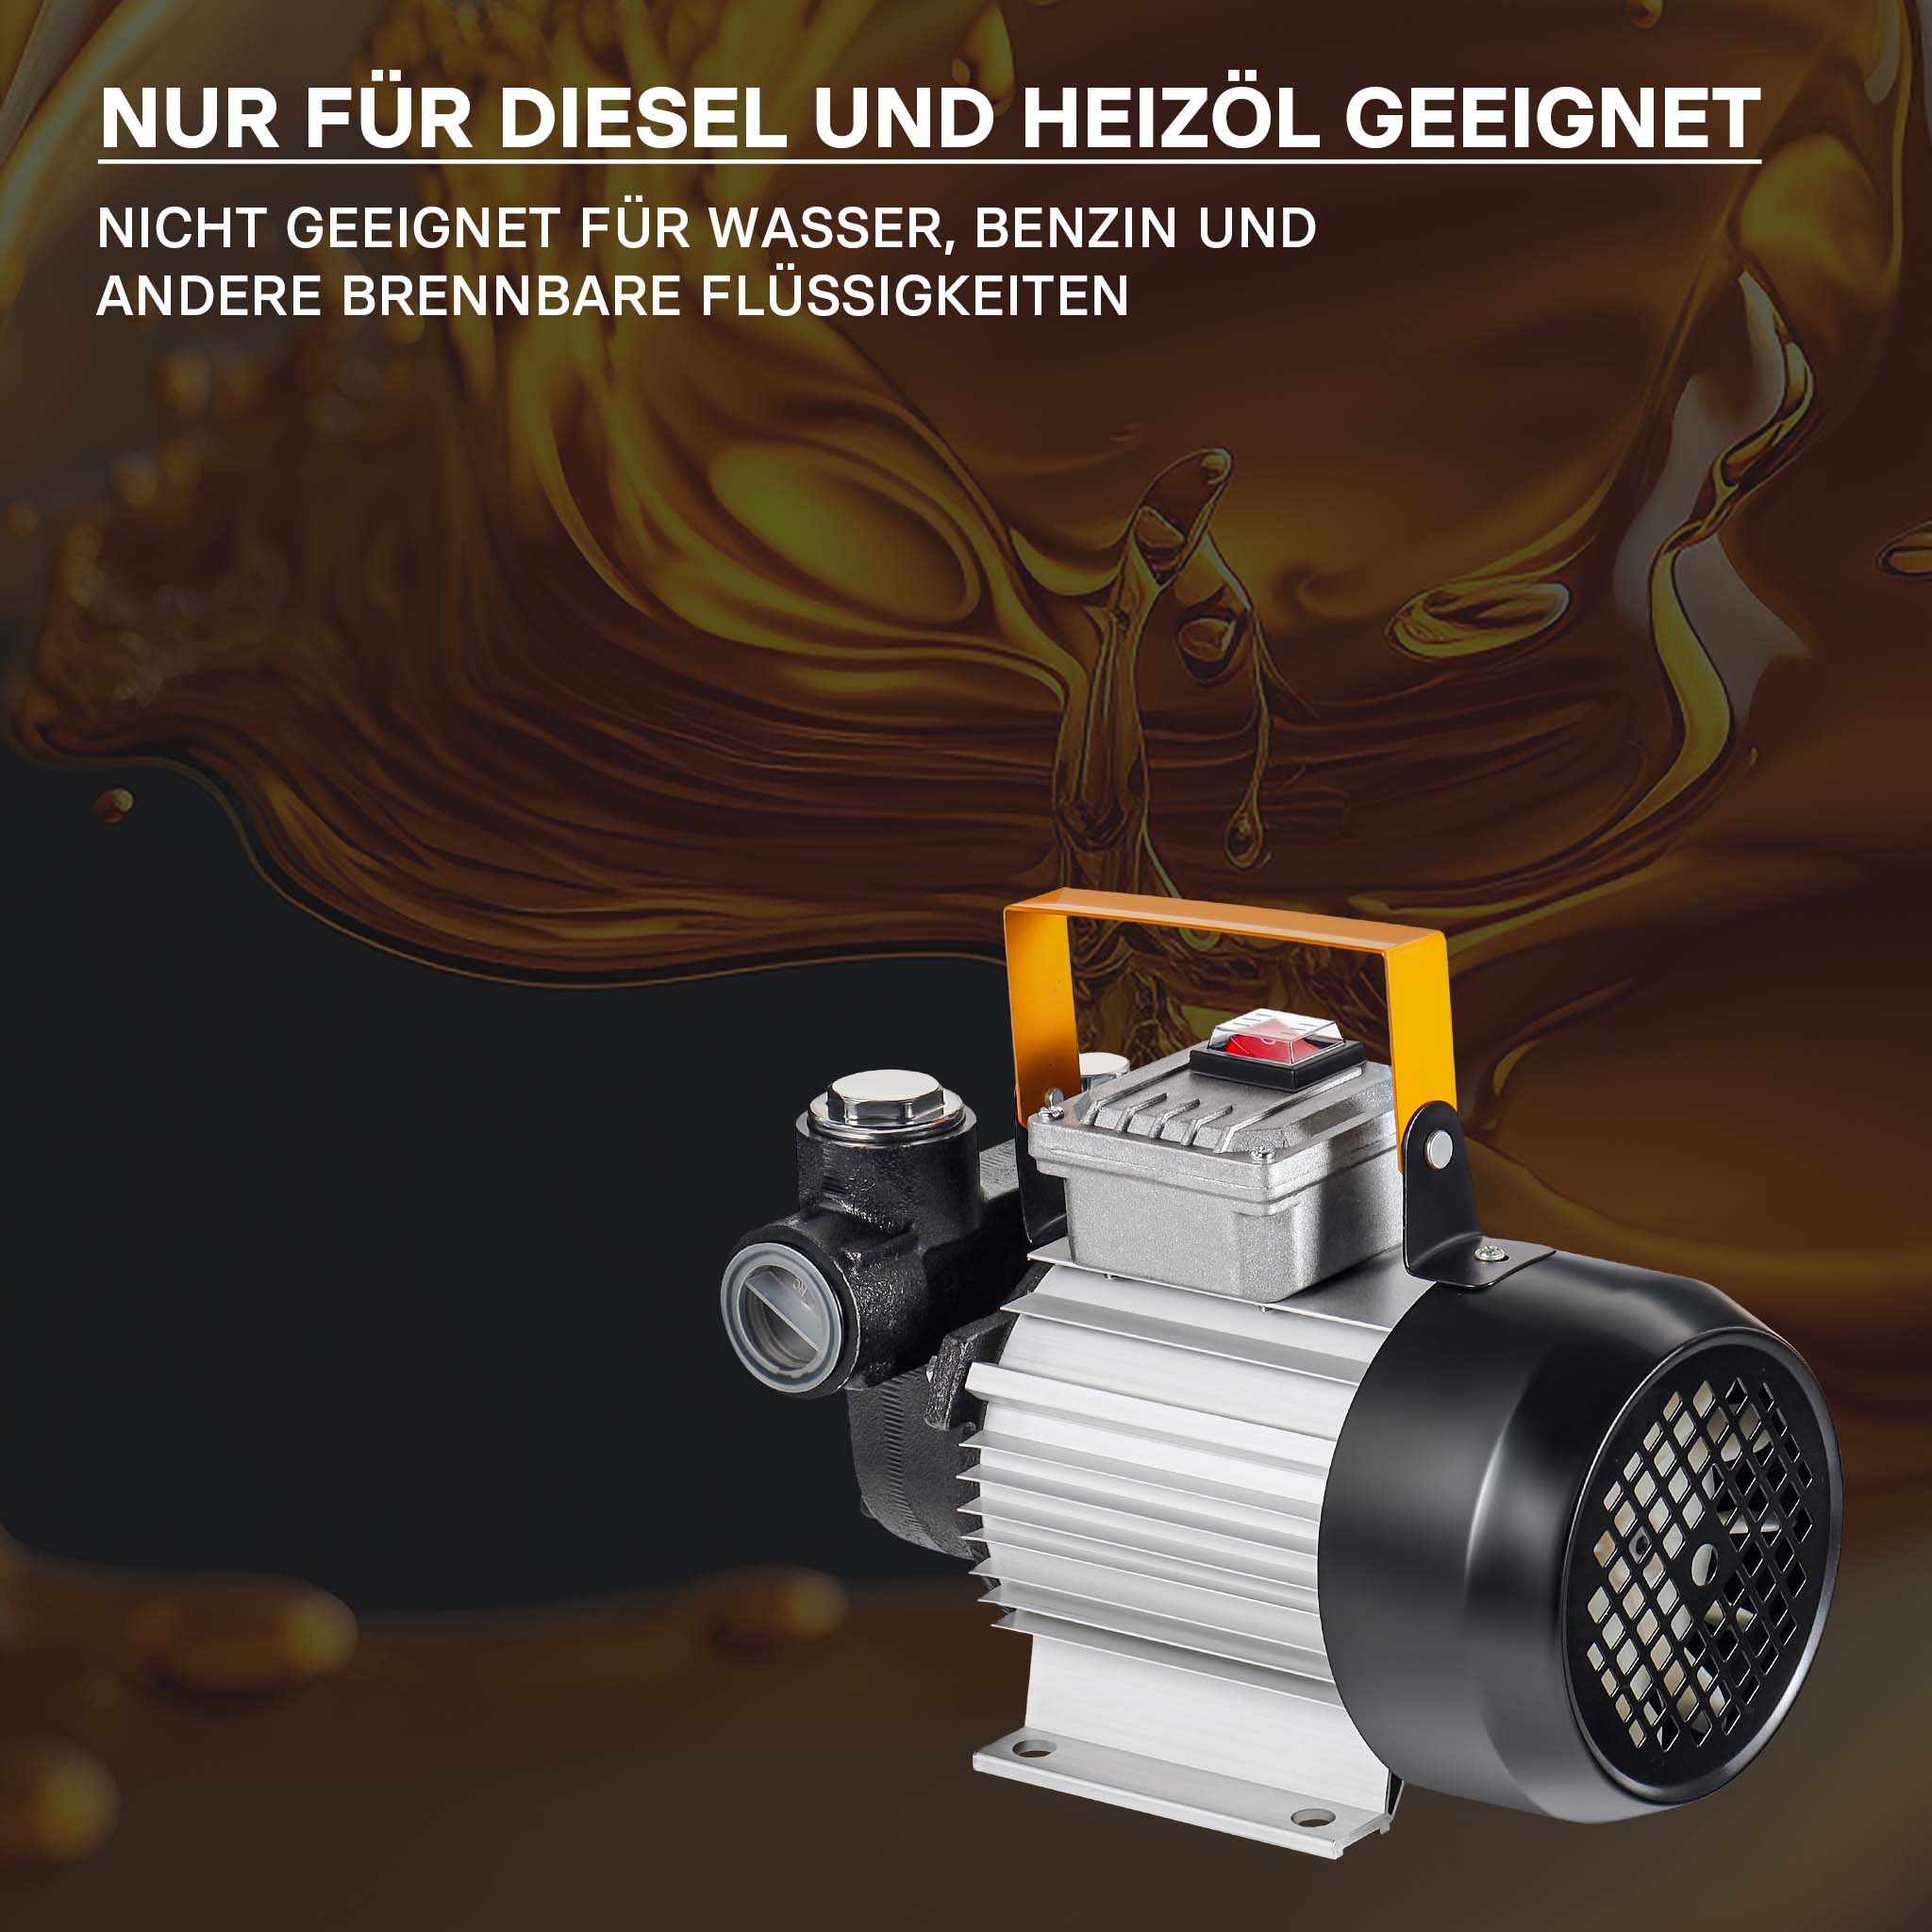 Pompe auto-amorçable réversible huile/gasoil - 16.171.24